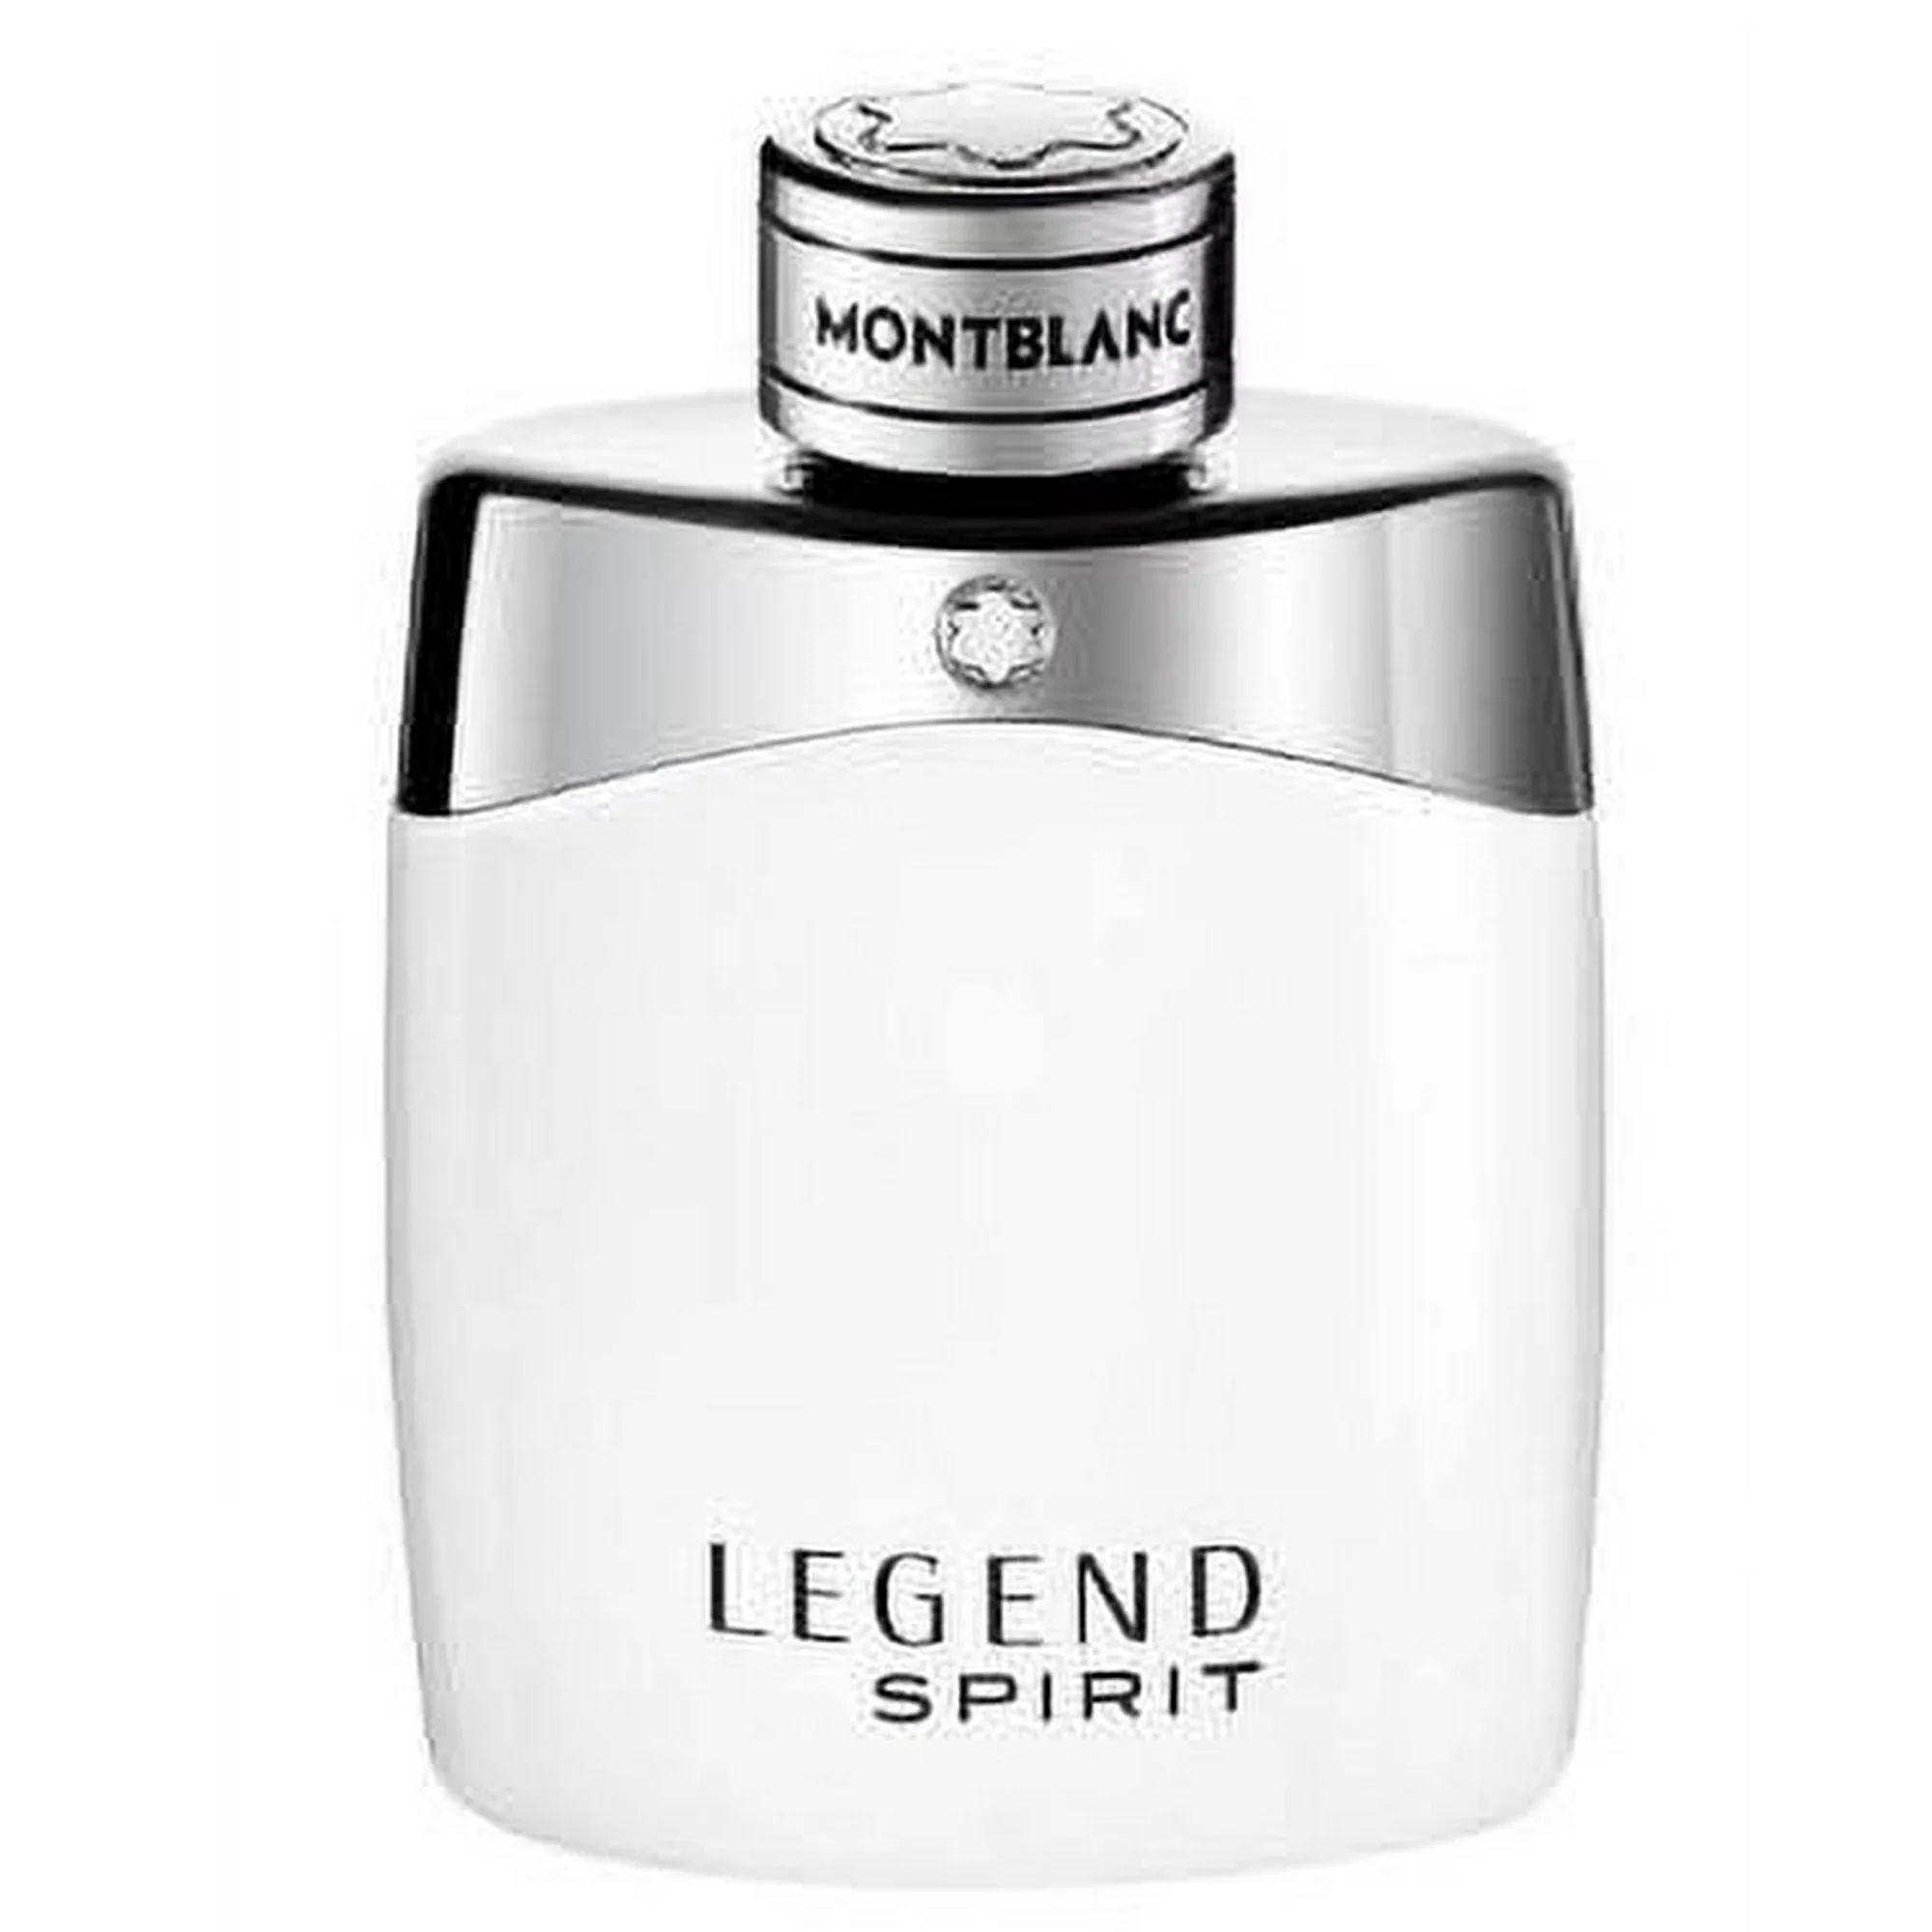 Montblanc Legend Spirit Eau de Toilette, Cologne for Men, 3.3 Oz | Walmart (US)